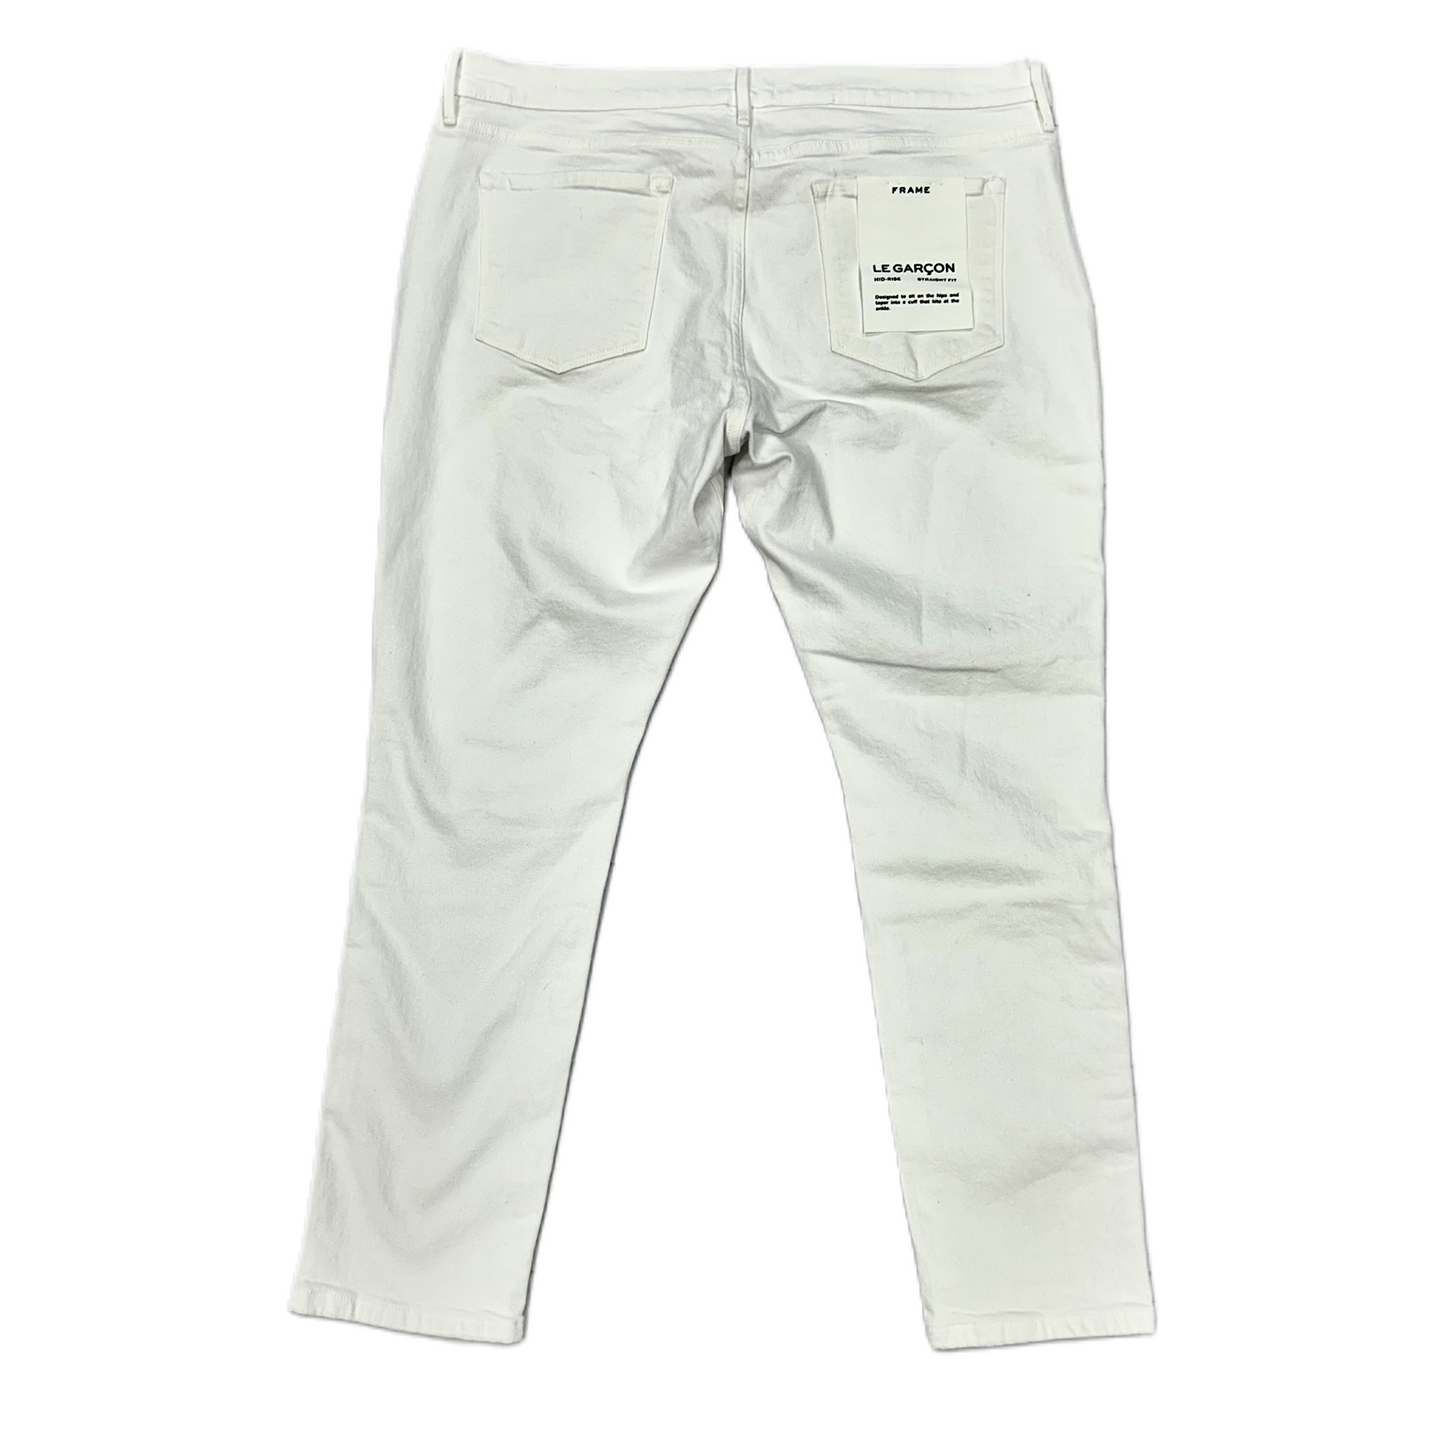 White Denim Jeans Designer By Frame, Size: 16